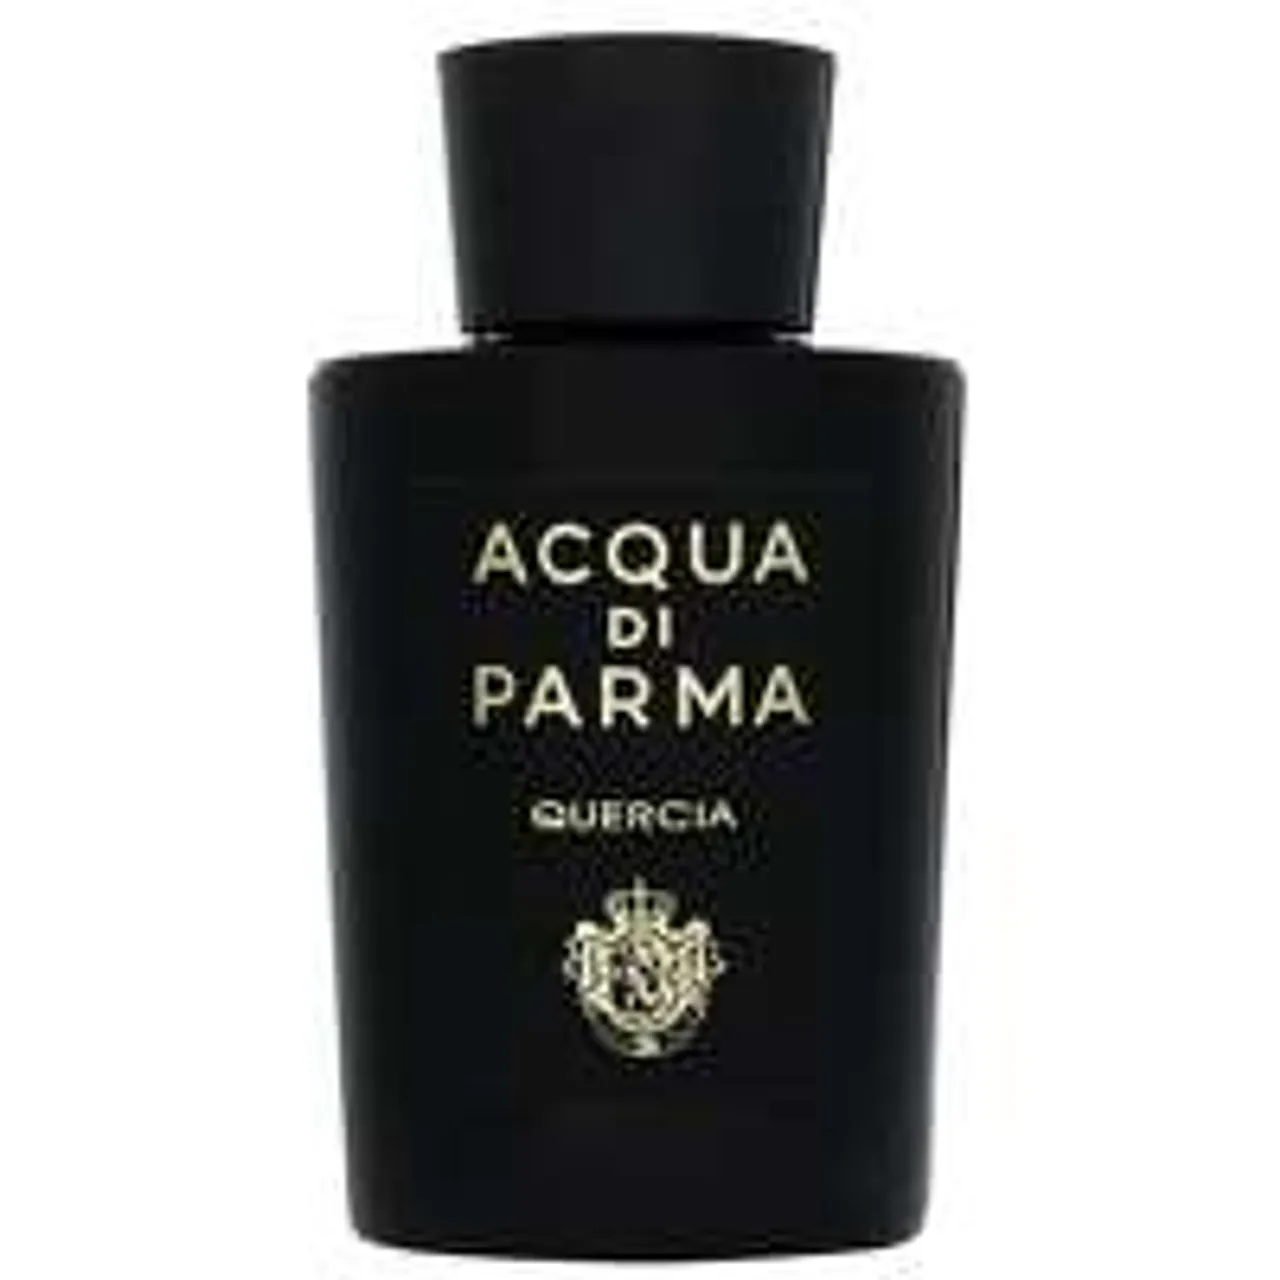 Acqua Di Parma Quercia Eau de Parfum Natural Spray 180ml